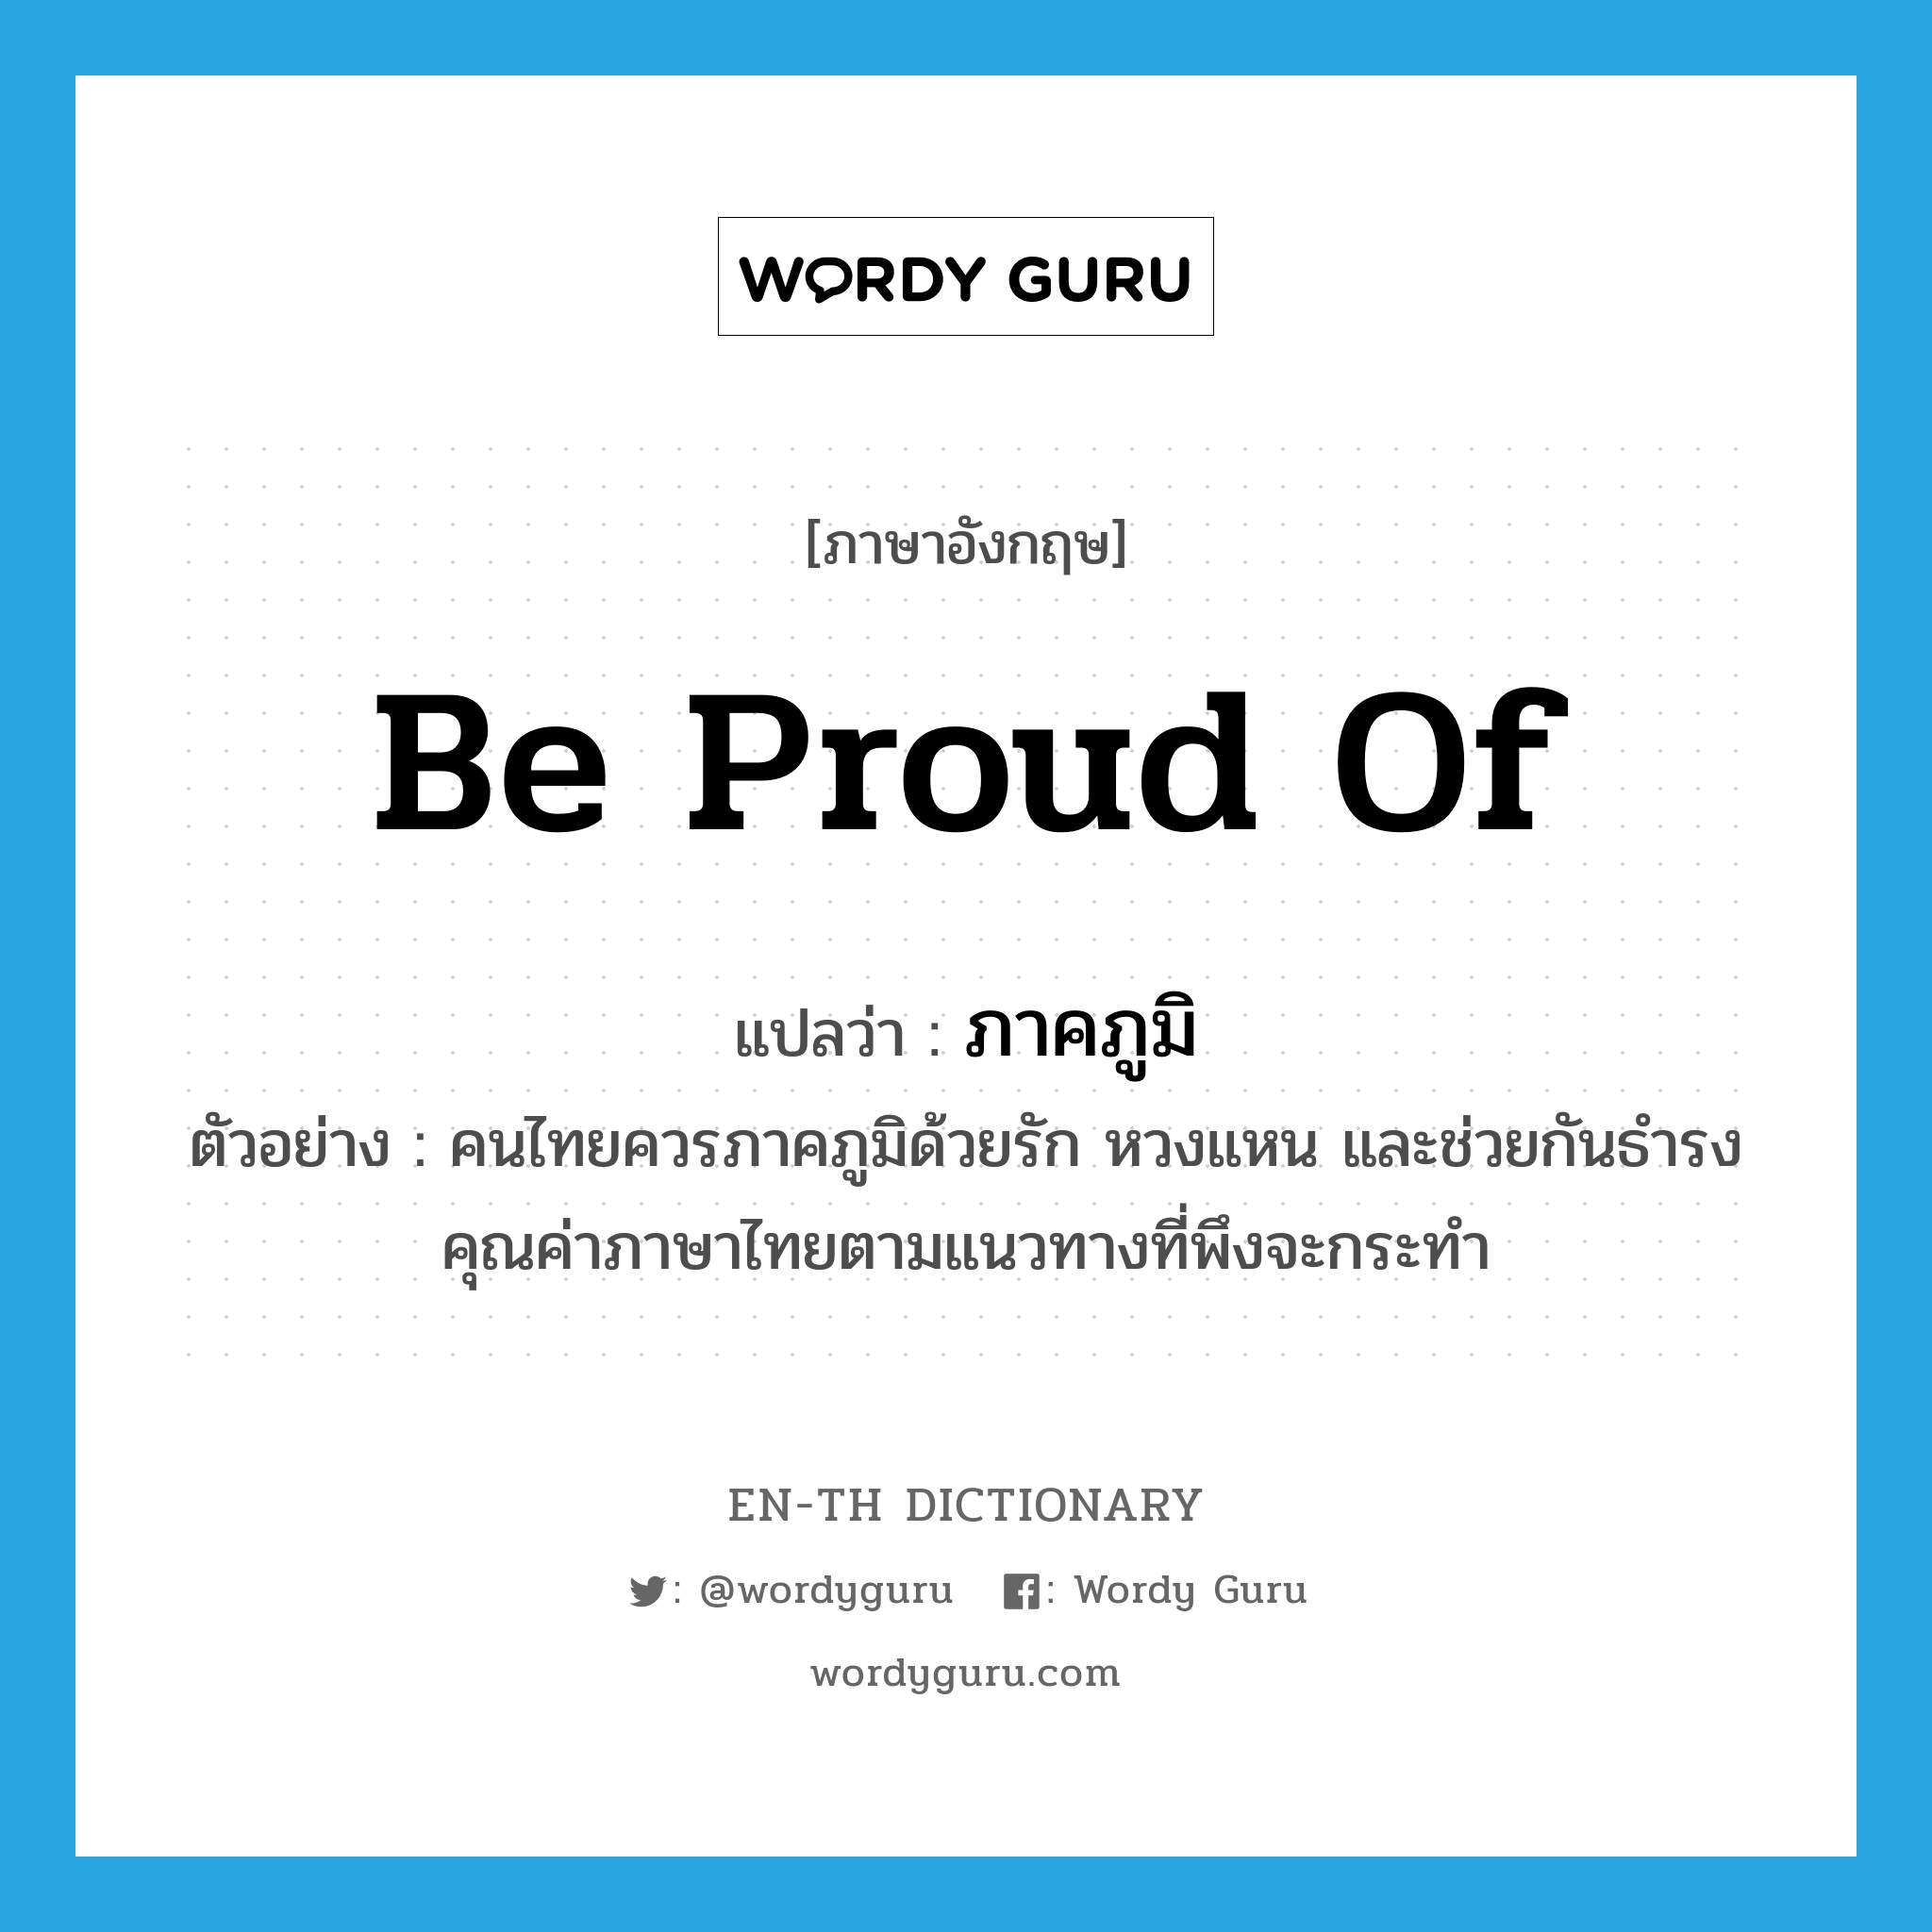 ภาคภูมิ ภาษาอังกฤษ?, คำศัพท์ภาษาอังกฤษ ภาคภูมิ แปลว่า be proud of ประเภท V ตัวอย่าง คนไทยควรภาคภูมิด้วยรัก หวงแหน และช่วยกันธำรงคุณค่าภาษาไทยตามแนวทางที่พึงจะกระทำ หมวด V